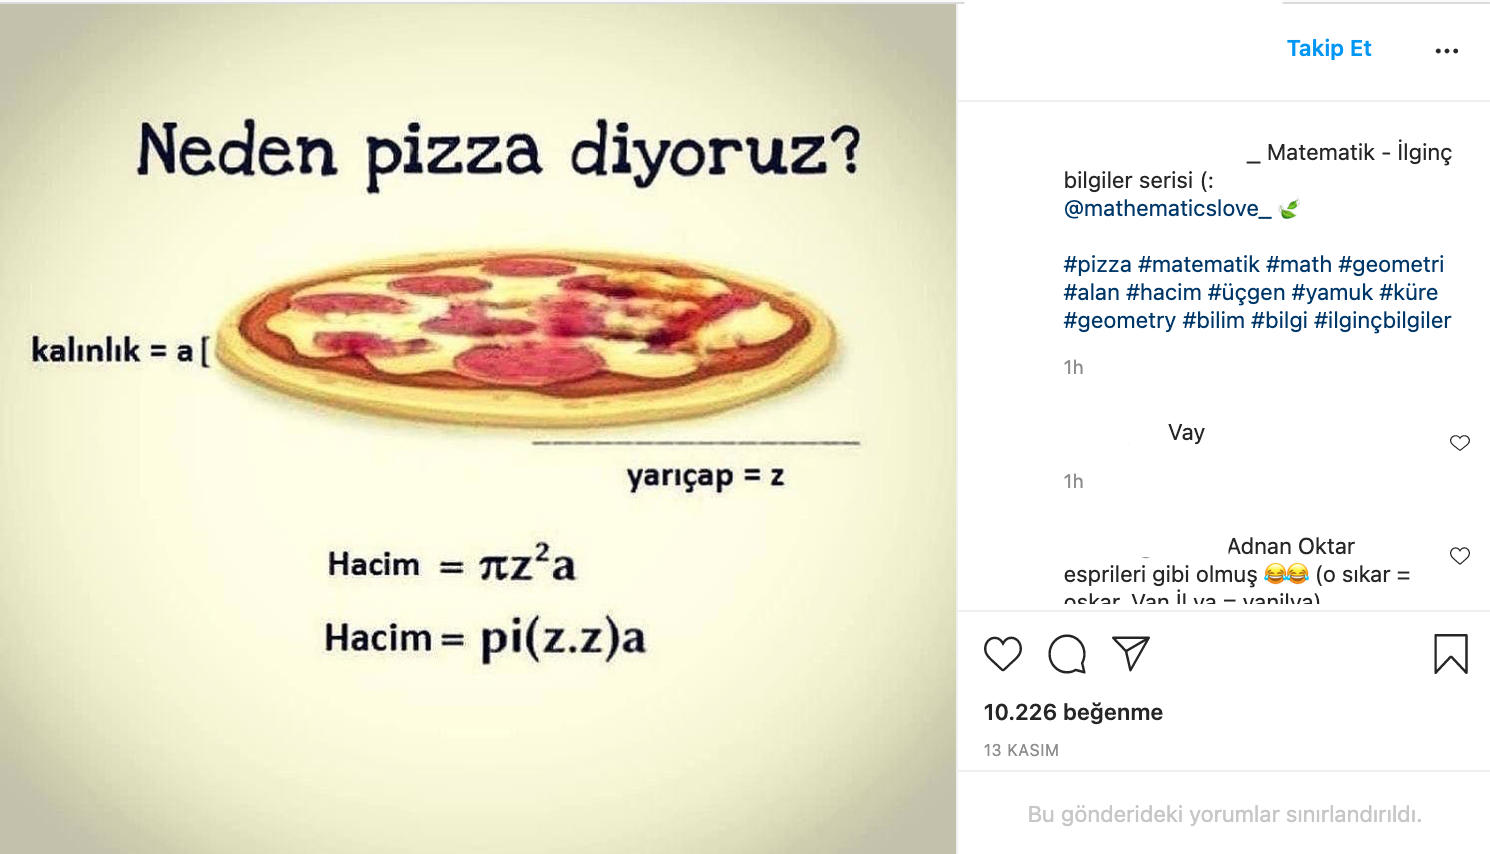 fotograf pizza kelimesinin hacim formulunden geldigi iddiasi